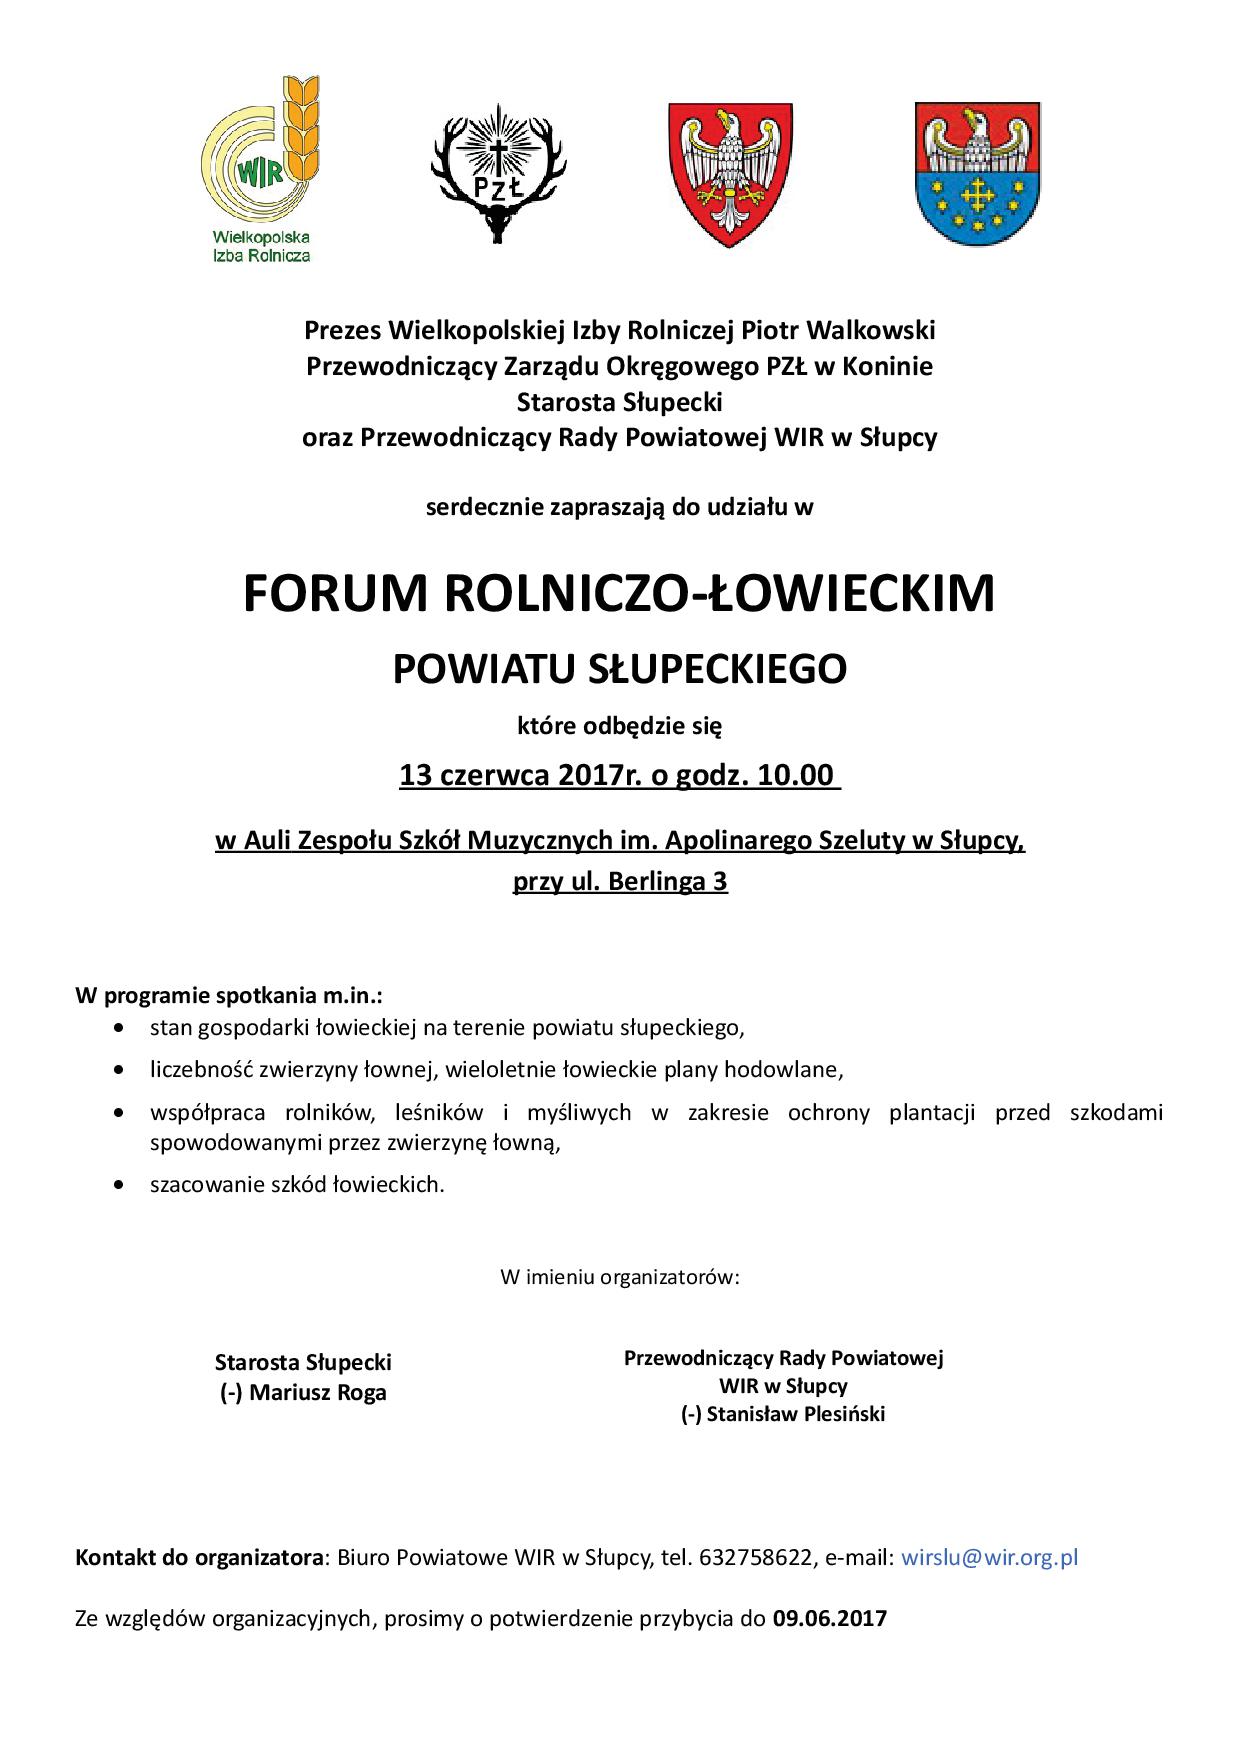 Forum Rolniczo - Łowieckie Powiatu Słupeckiego